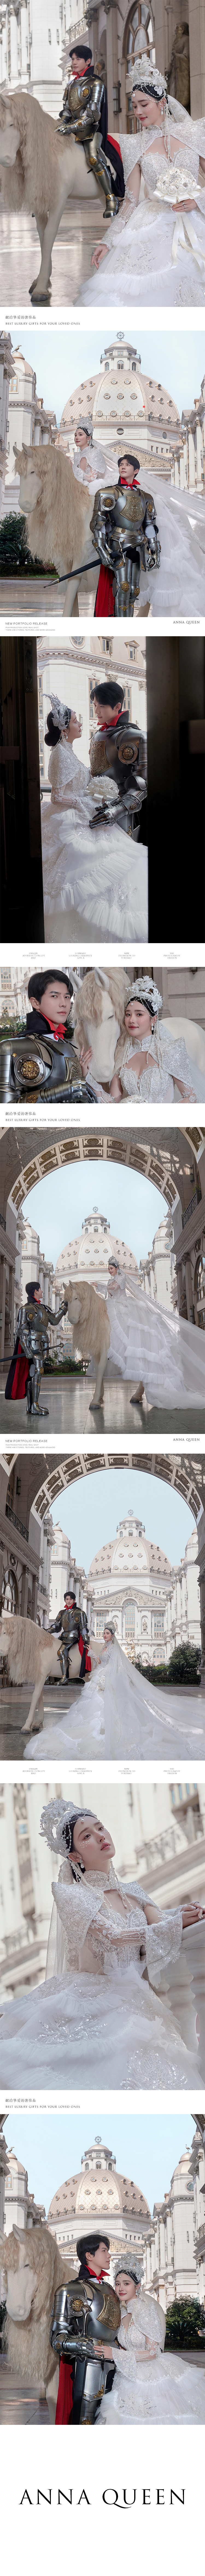 欧式古堡·公主与骑士｜创意重磅婚纱照